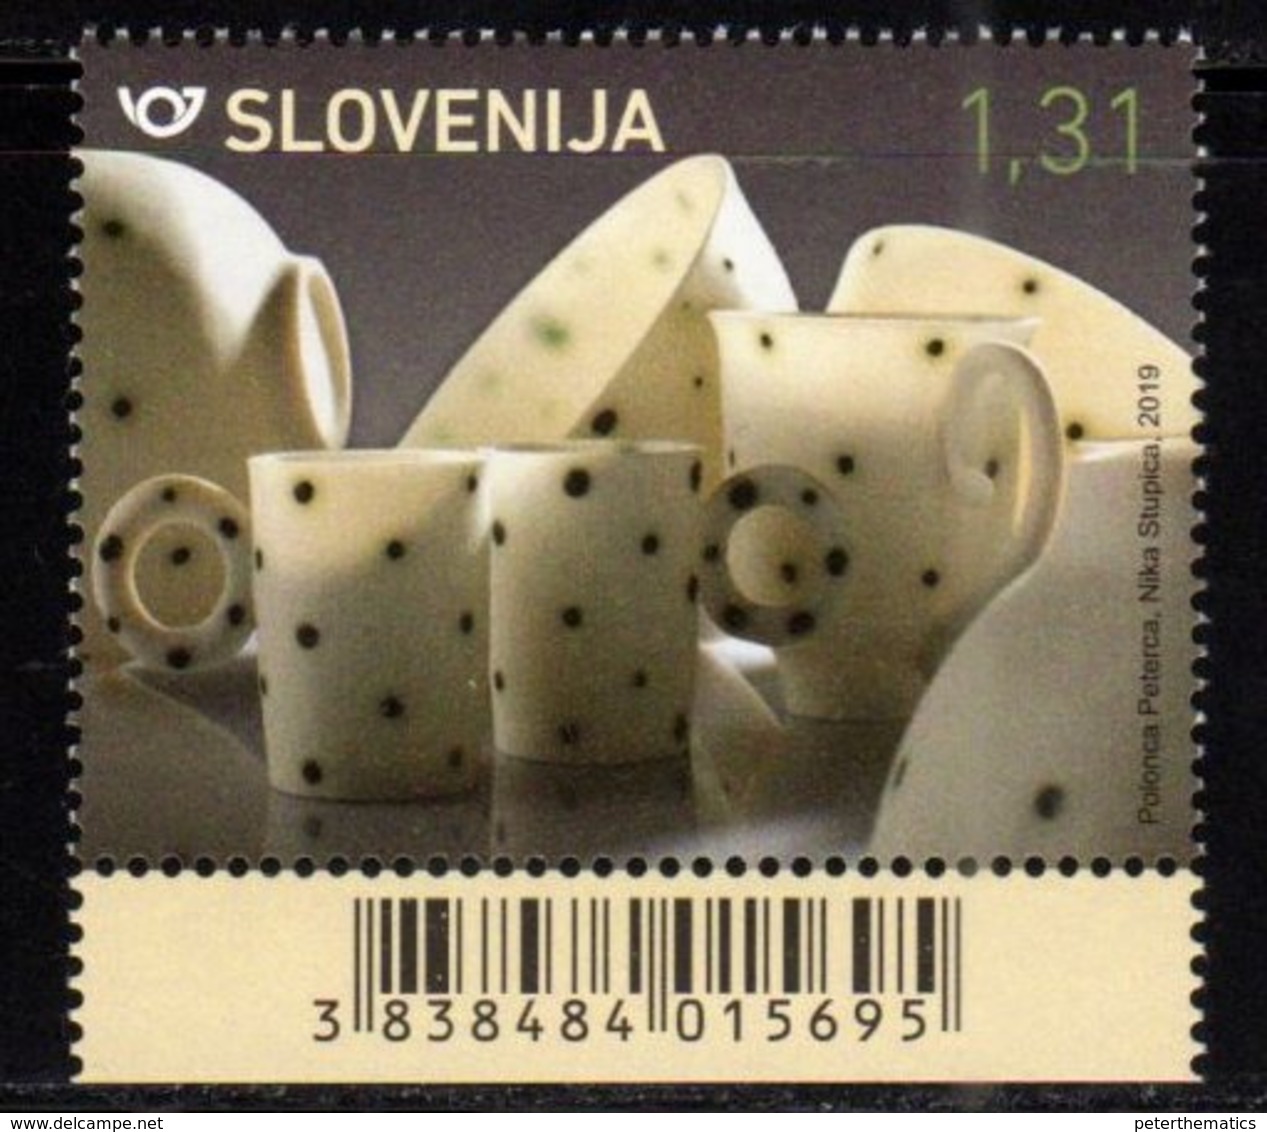 SLOVENIA , 2019, MNH, ARTS AND CRAFTS IN SLOVENIA, PORCELAIN,1v - Porcelain